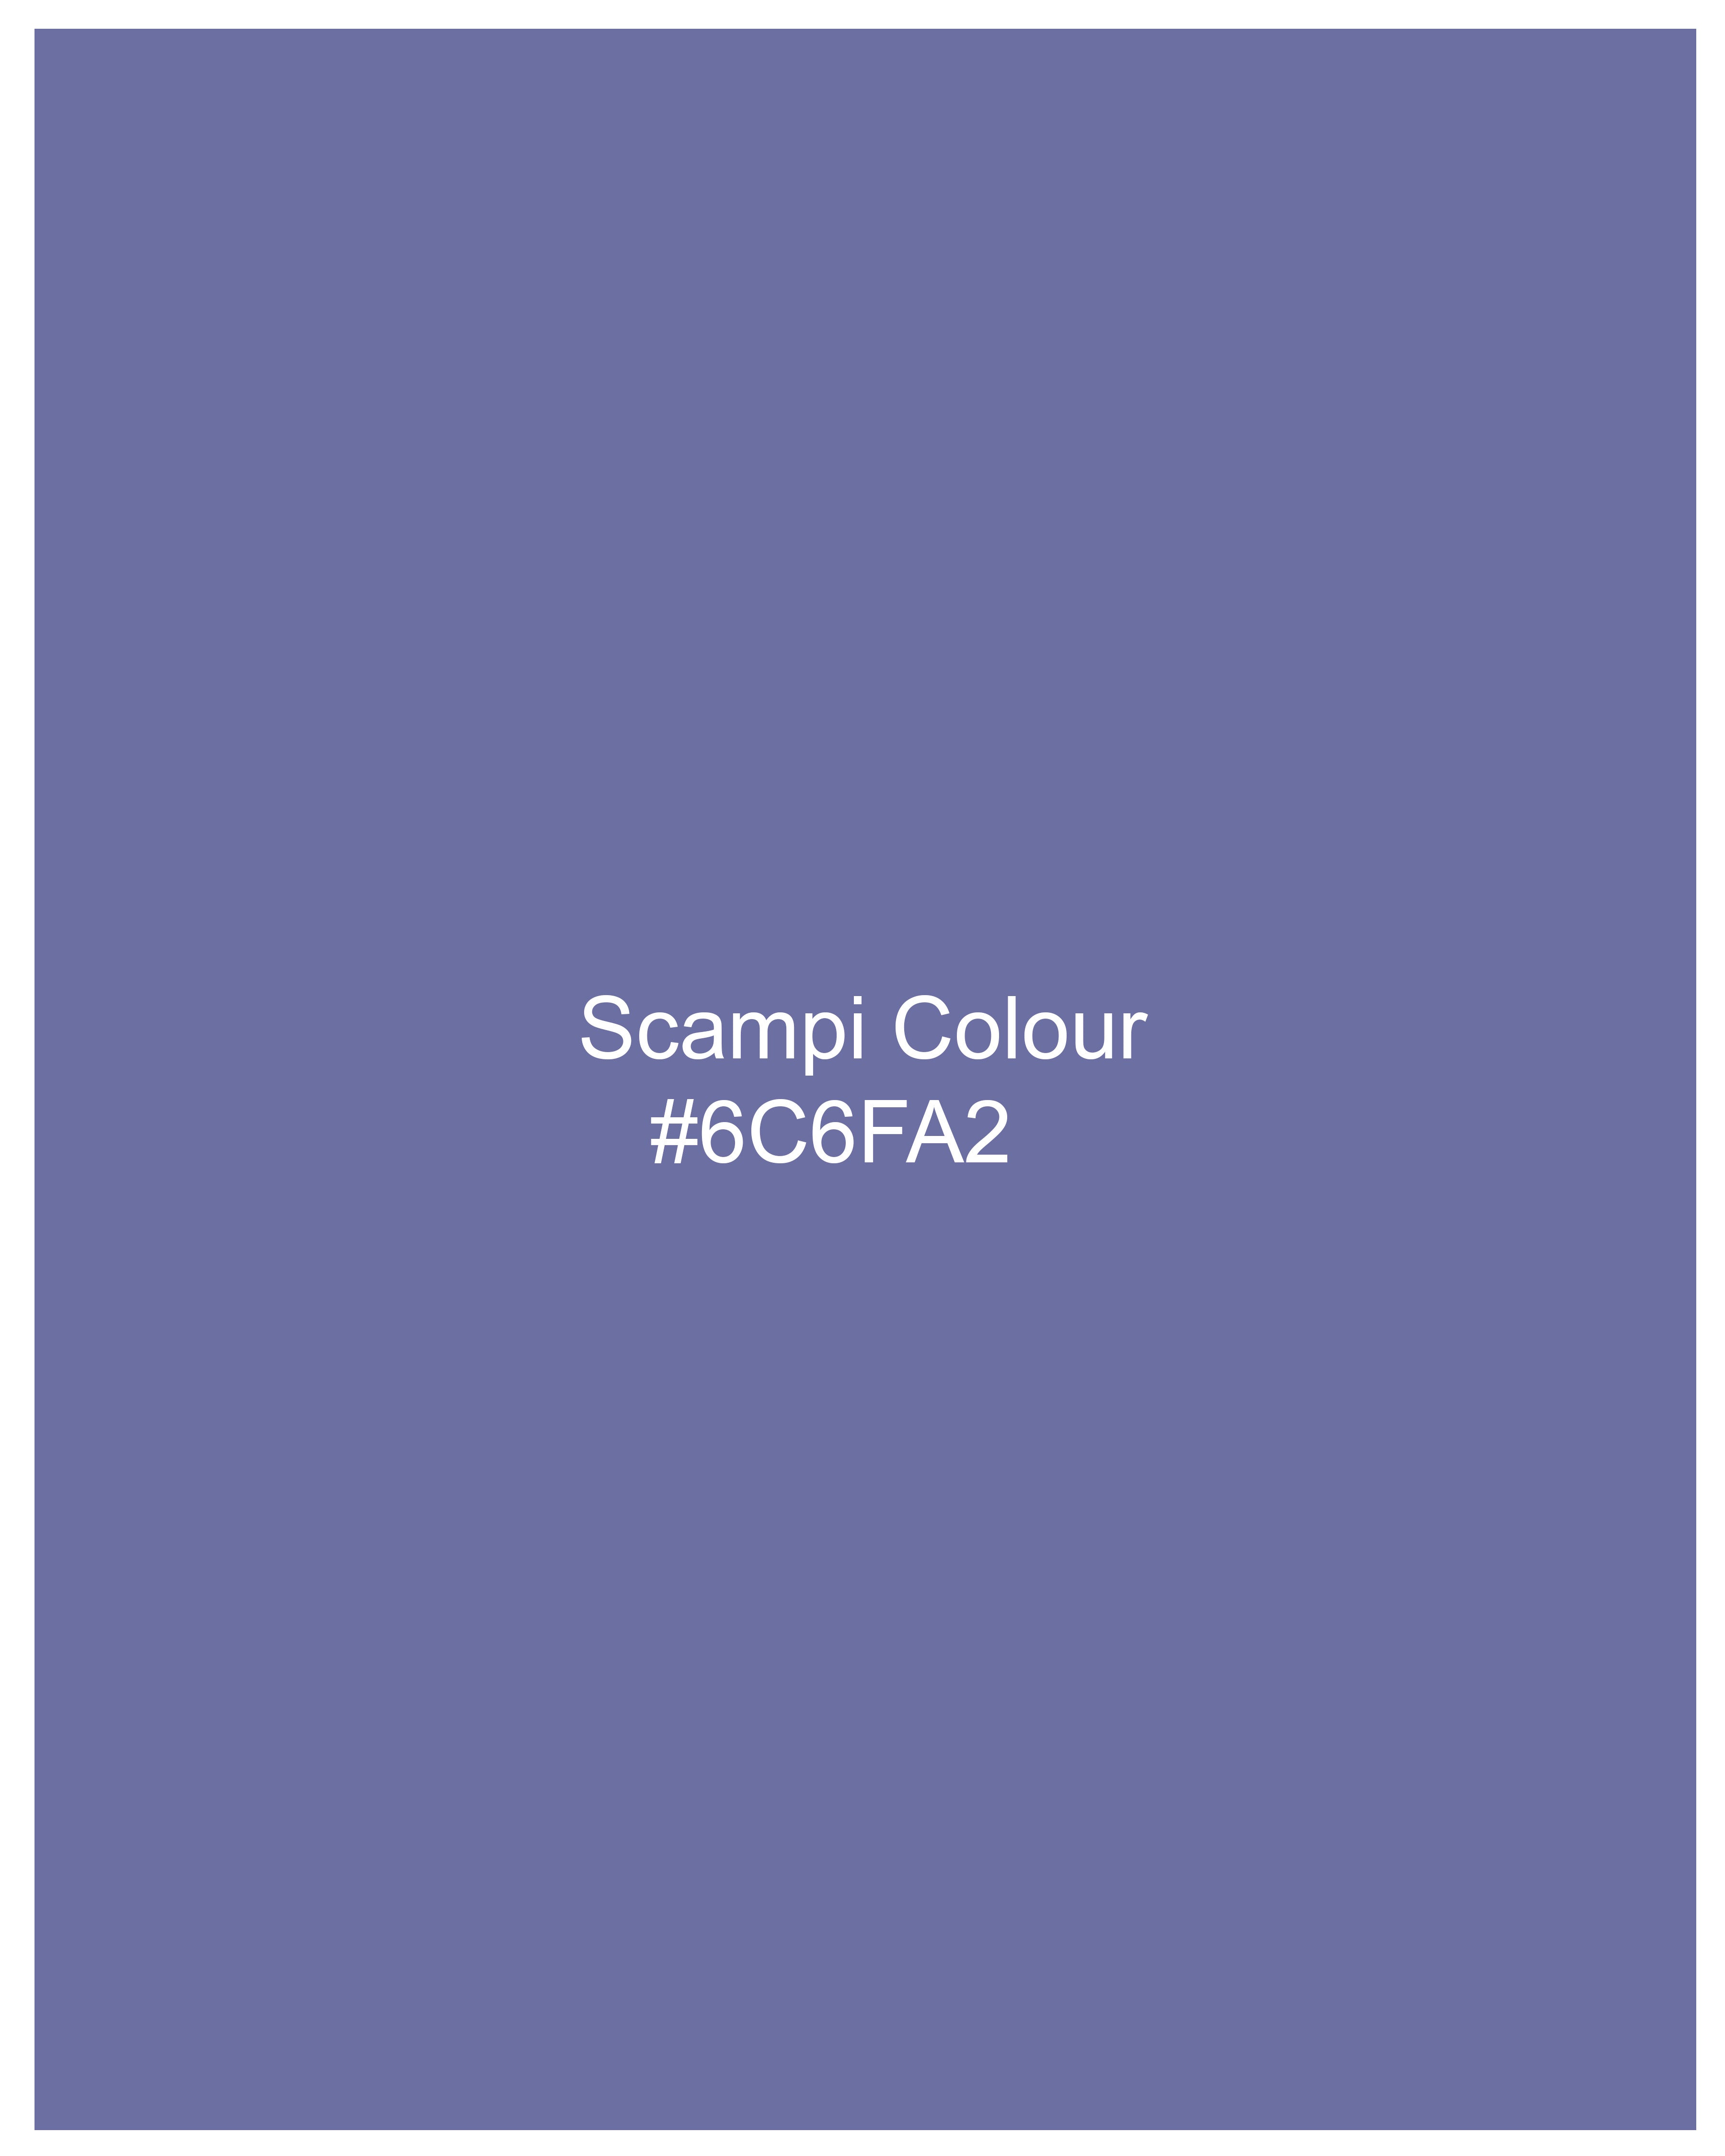 Scampi Blue Luxurious Linen Shirt 9353-CP-38, 9353-CP-H-38, 9353-CP-39, 9353-CP-H-39, 9353-CP-40, 9353-CP-H-40, 9353-CP-42, 9353-CP-H-42, 9353-CP-44, 9353-CP-H-44, 9353-CP-46, 9353-CP-H-46, 9353-CP-48, 9353-CP-H-48, 9353-CP-50, 9353-CP-H-50, 9353-CP-52, 9353-CP-H-52